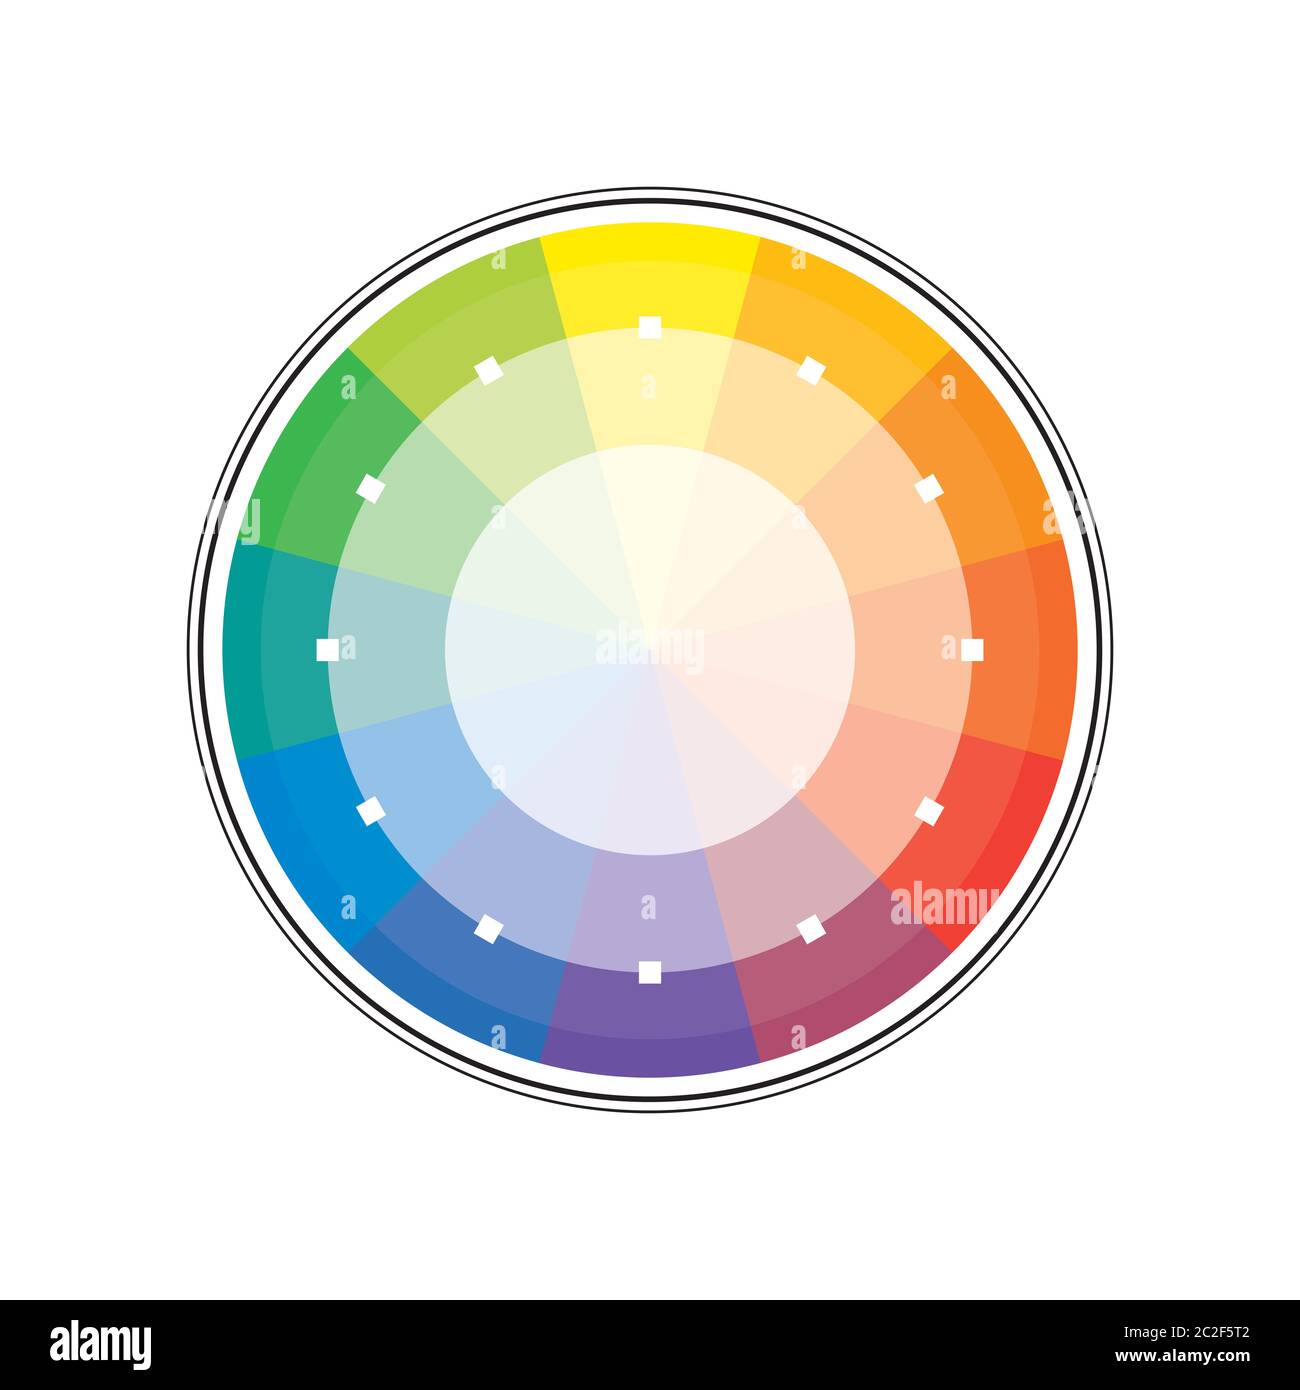 Polychrome Multicolor Rainbow spettrale cerchio di 12 segmenti. L'armonica spettrale colorata tavolozza di pittore. Foto Stock